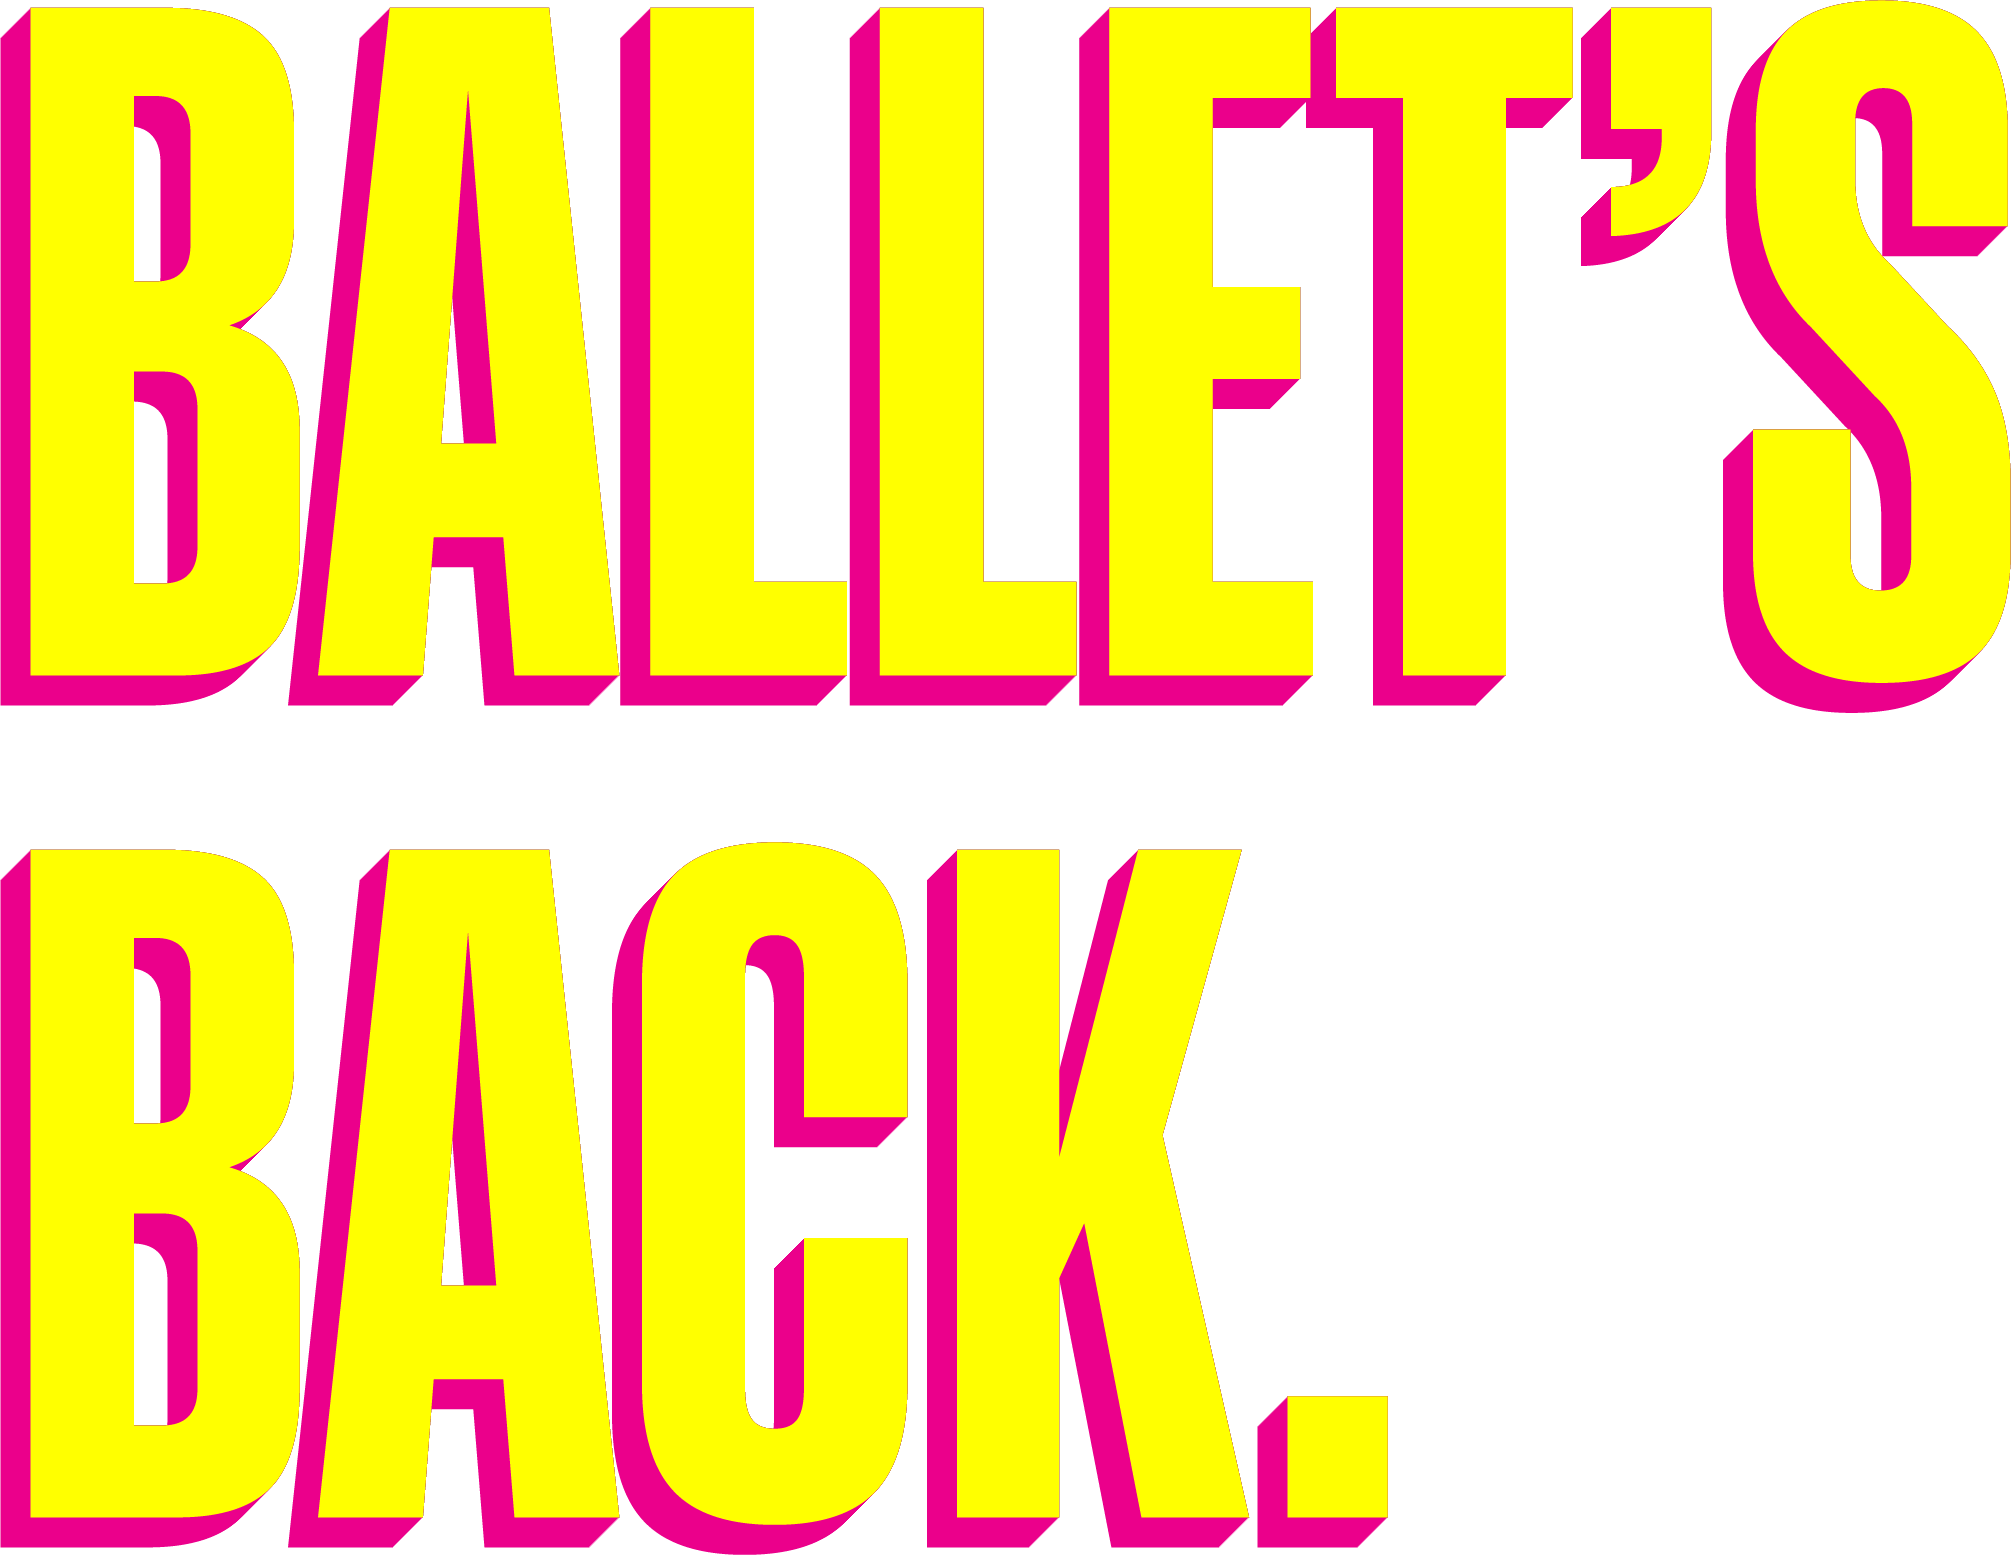 Ballet's Back in a retro colorscheme